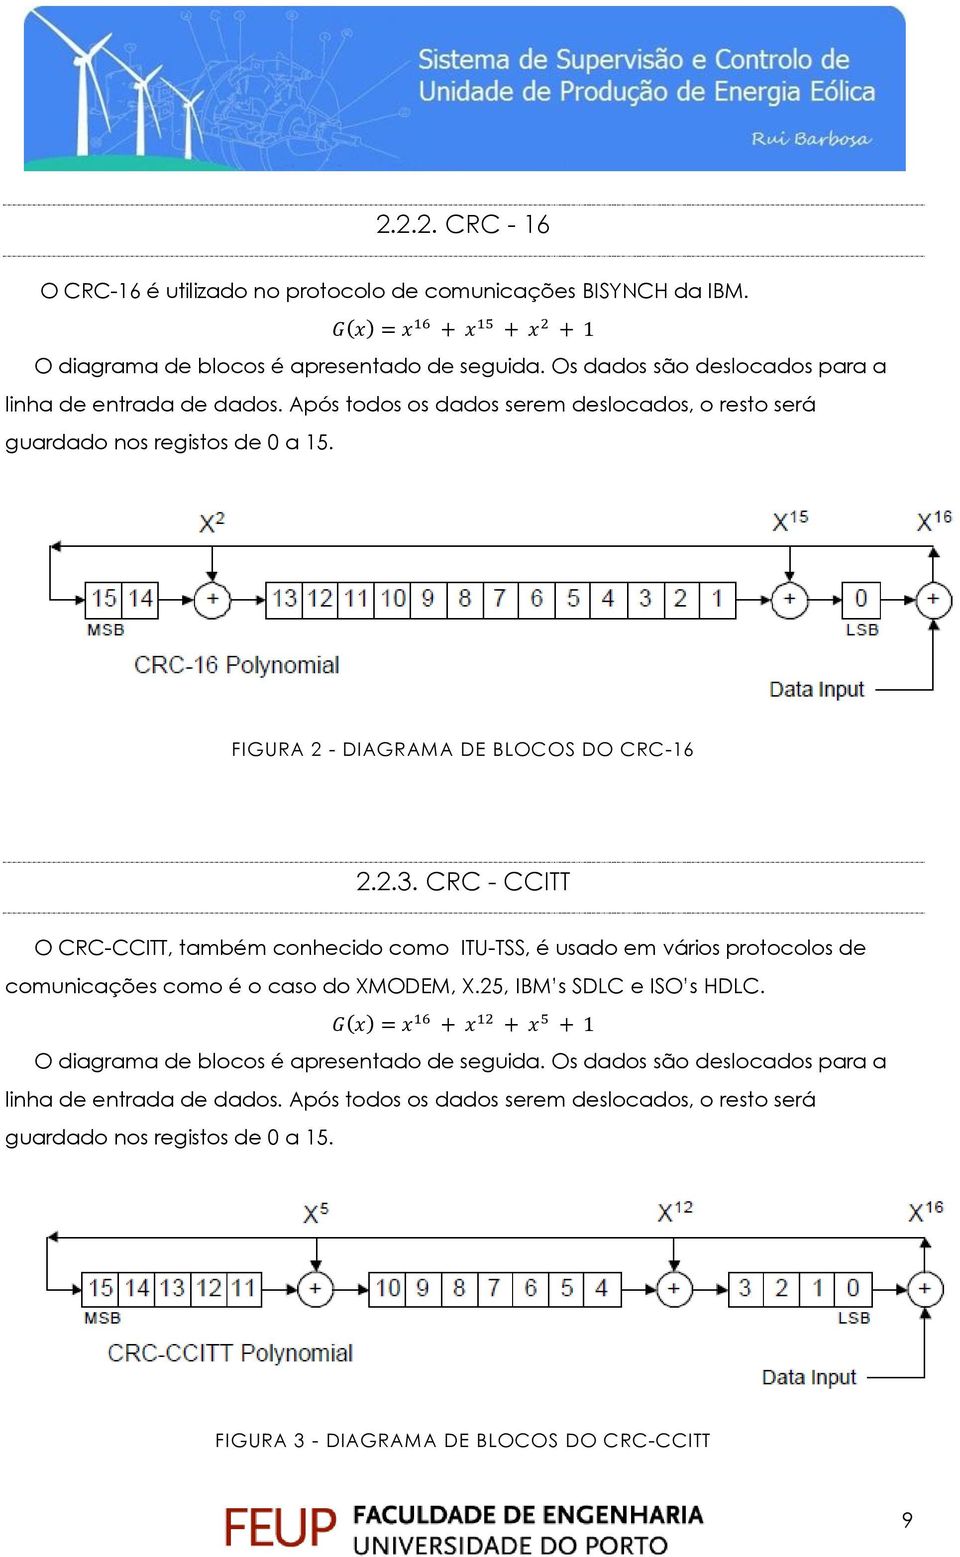 FIGURA 2 - DIAGRAMA DE BLOCOS DO CRC-16 2.2.3. CRC - CCITT O CRC-CCITT, também conhecido como ITU-TSS, é usado em vários protocolos de comunicações como é o caso do XMODEM, X.